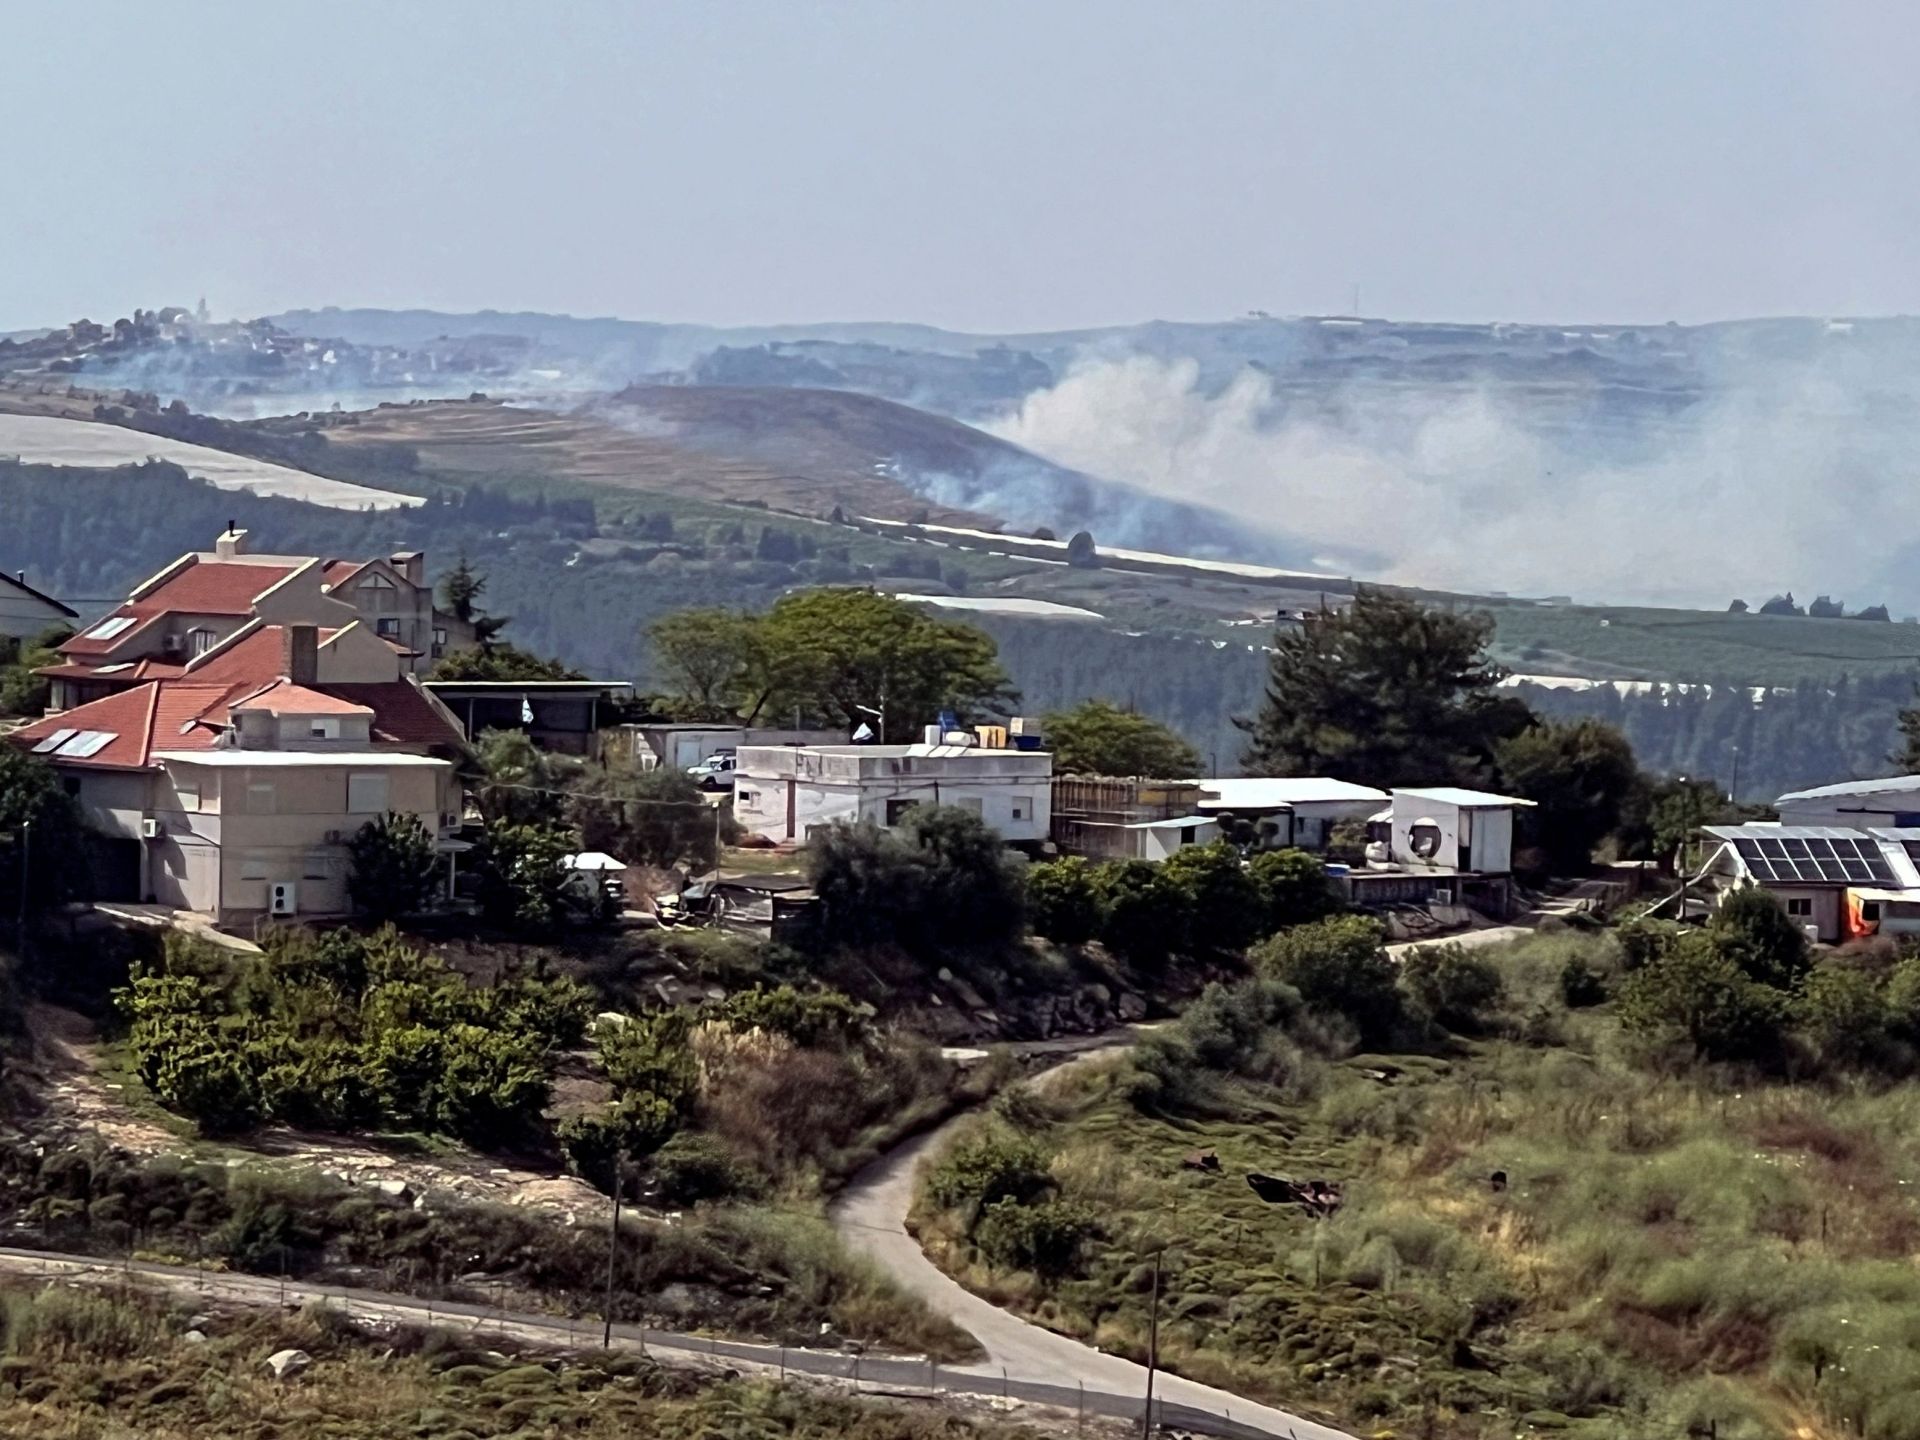 غارات إسرائيلية جنوبي لبنان وحزب الله يقصف مواقع عسكرية للاحتلال | أخبار – البوكس نيوز